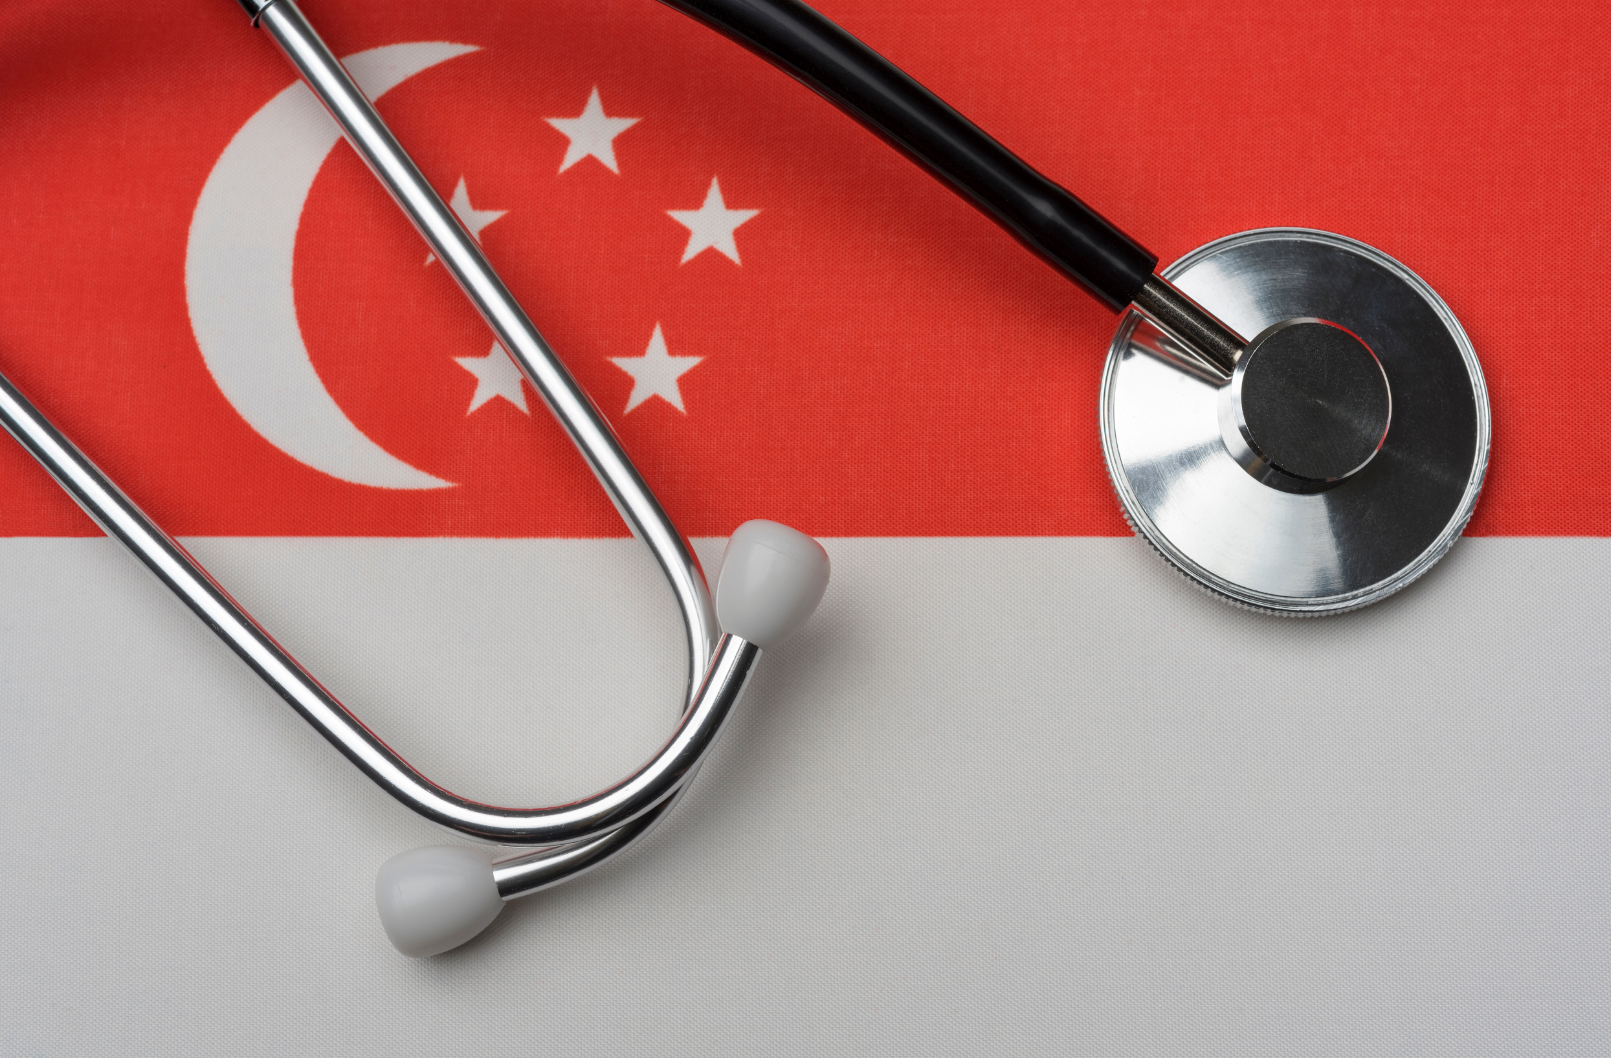 À partir du 1er avril, les employeurs devront obligatoirement souscrire un plan de soins primaires pour les travailleurs migrants à Singapour